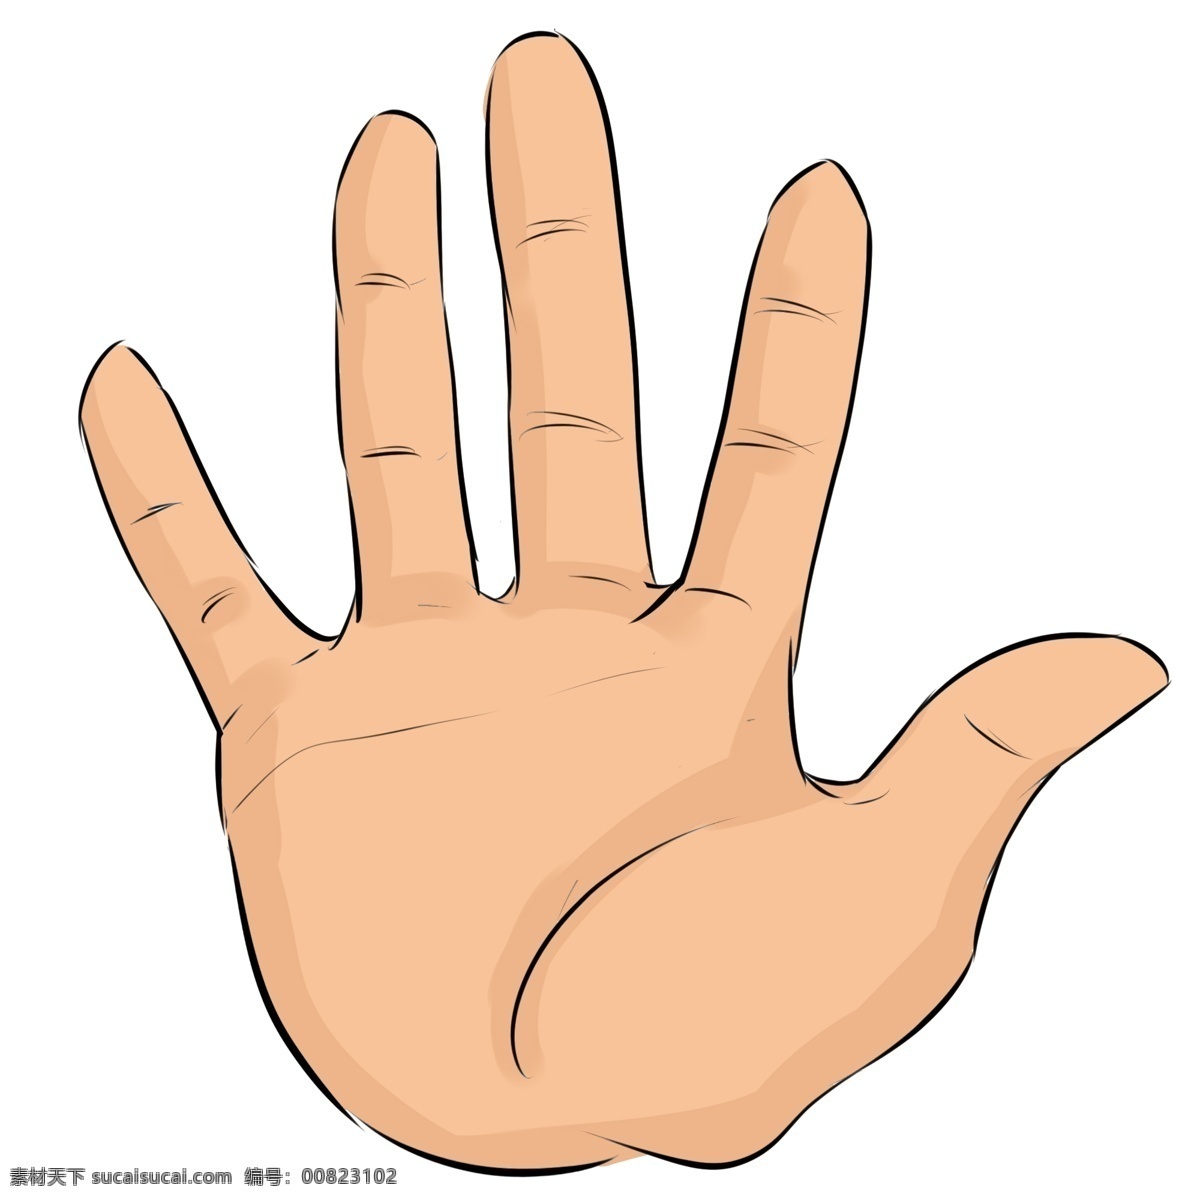 数字 五字 手势 插画 数字五手势 卡通插画 手势插画 比划手势 细长手指 长长的手指 漂亮的手掌